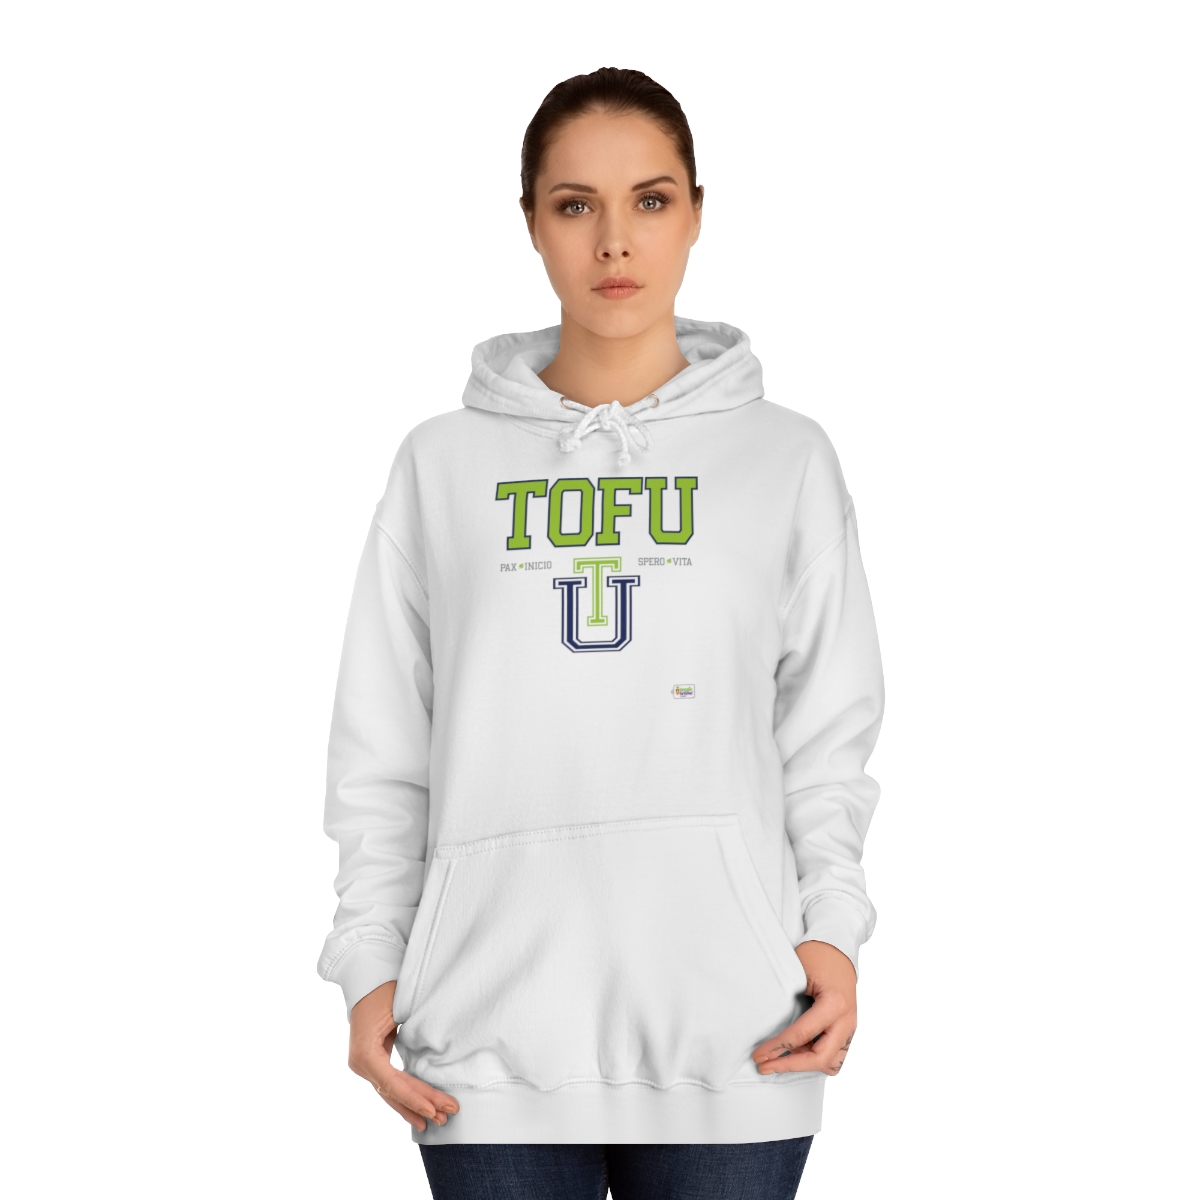 Cozy Tofu U Logo Hoodie: Wear Your Plant-Powered Pride! – Unisex College Hoodie